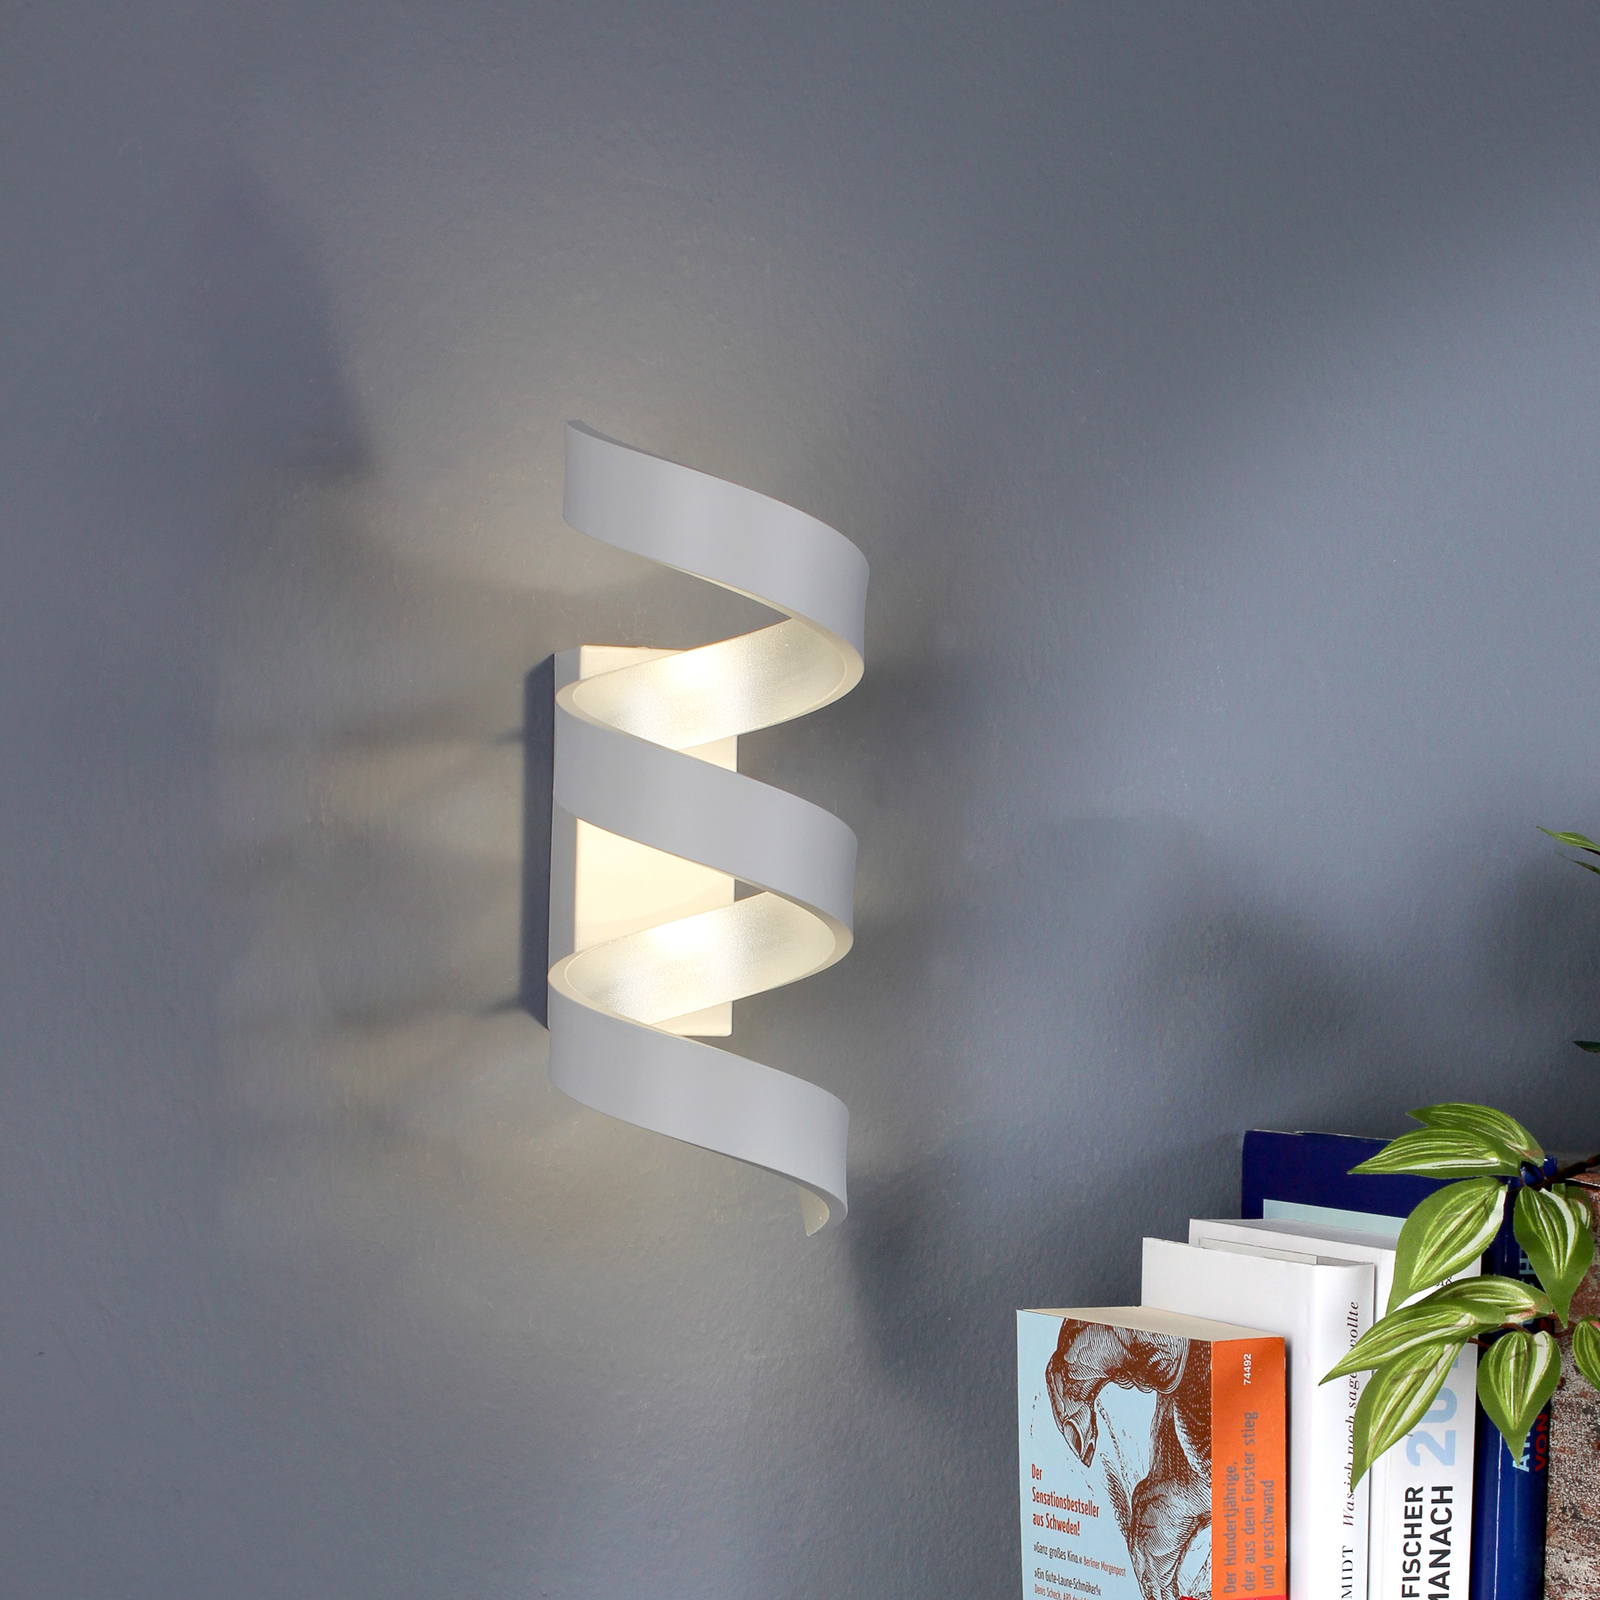 LED-Wandleuchte Helix, weiß-silber, Höhe 26 cm